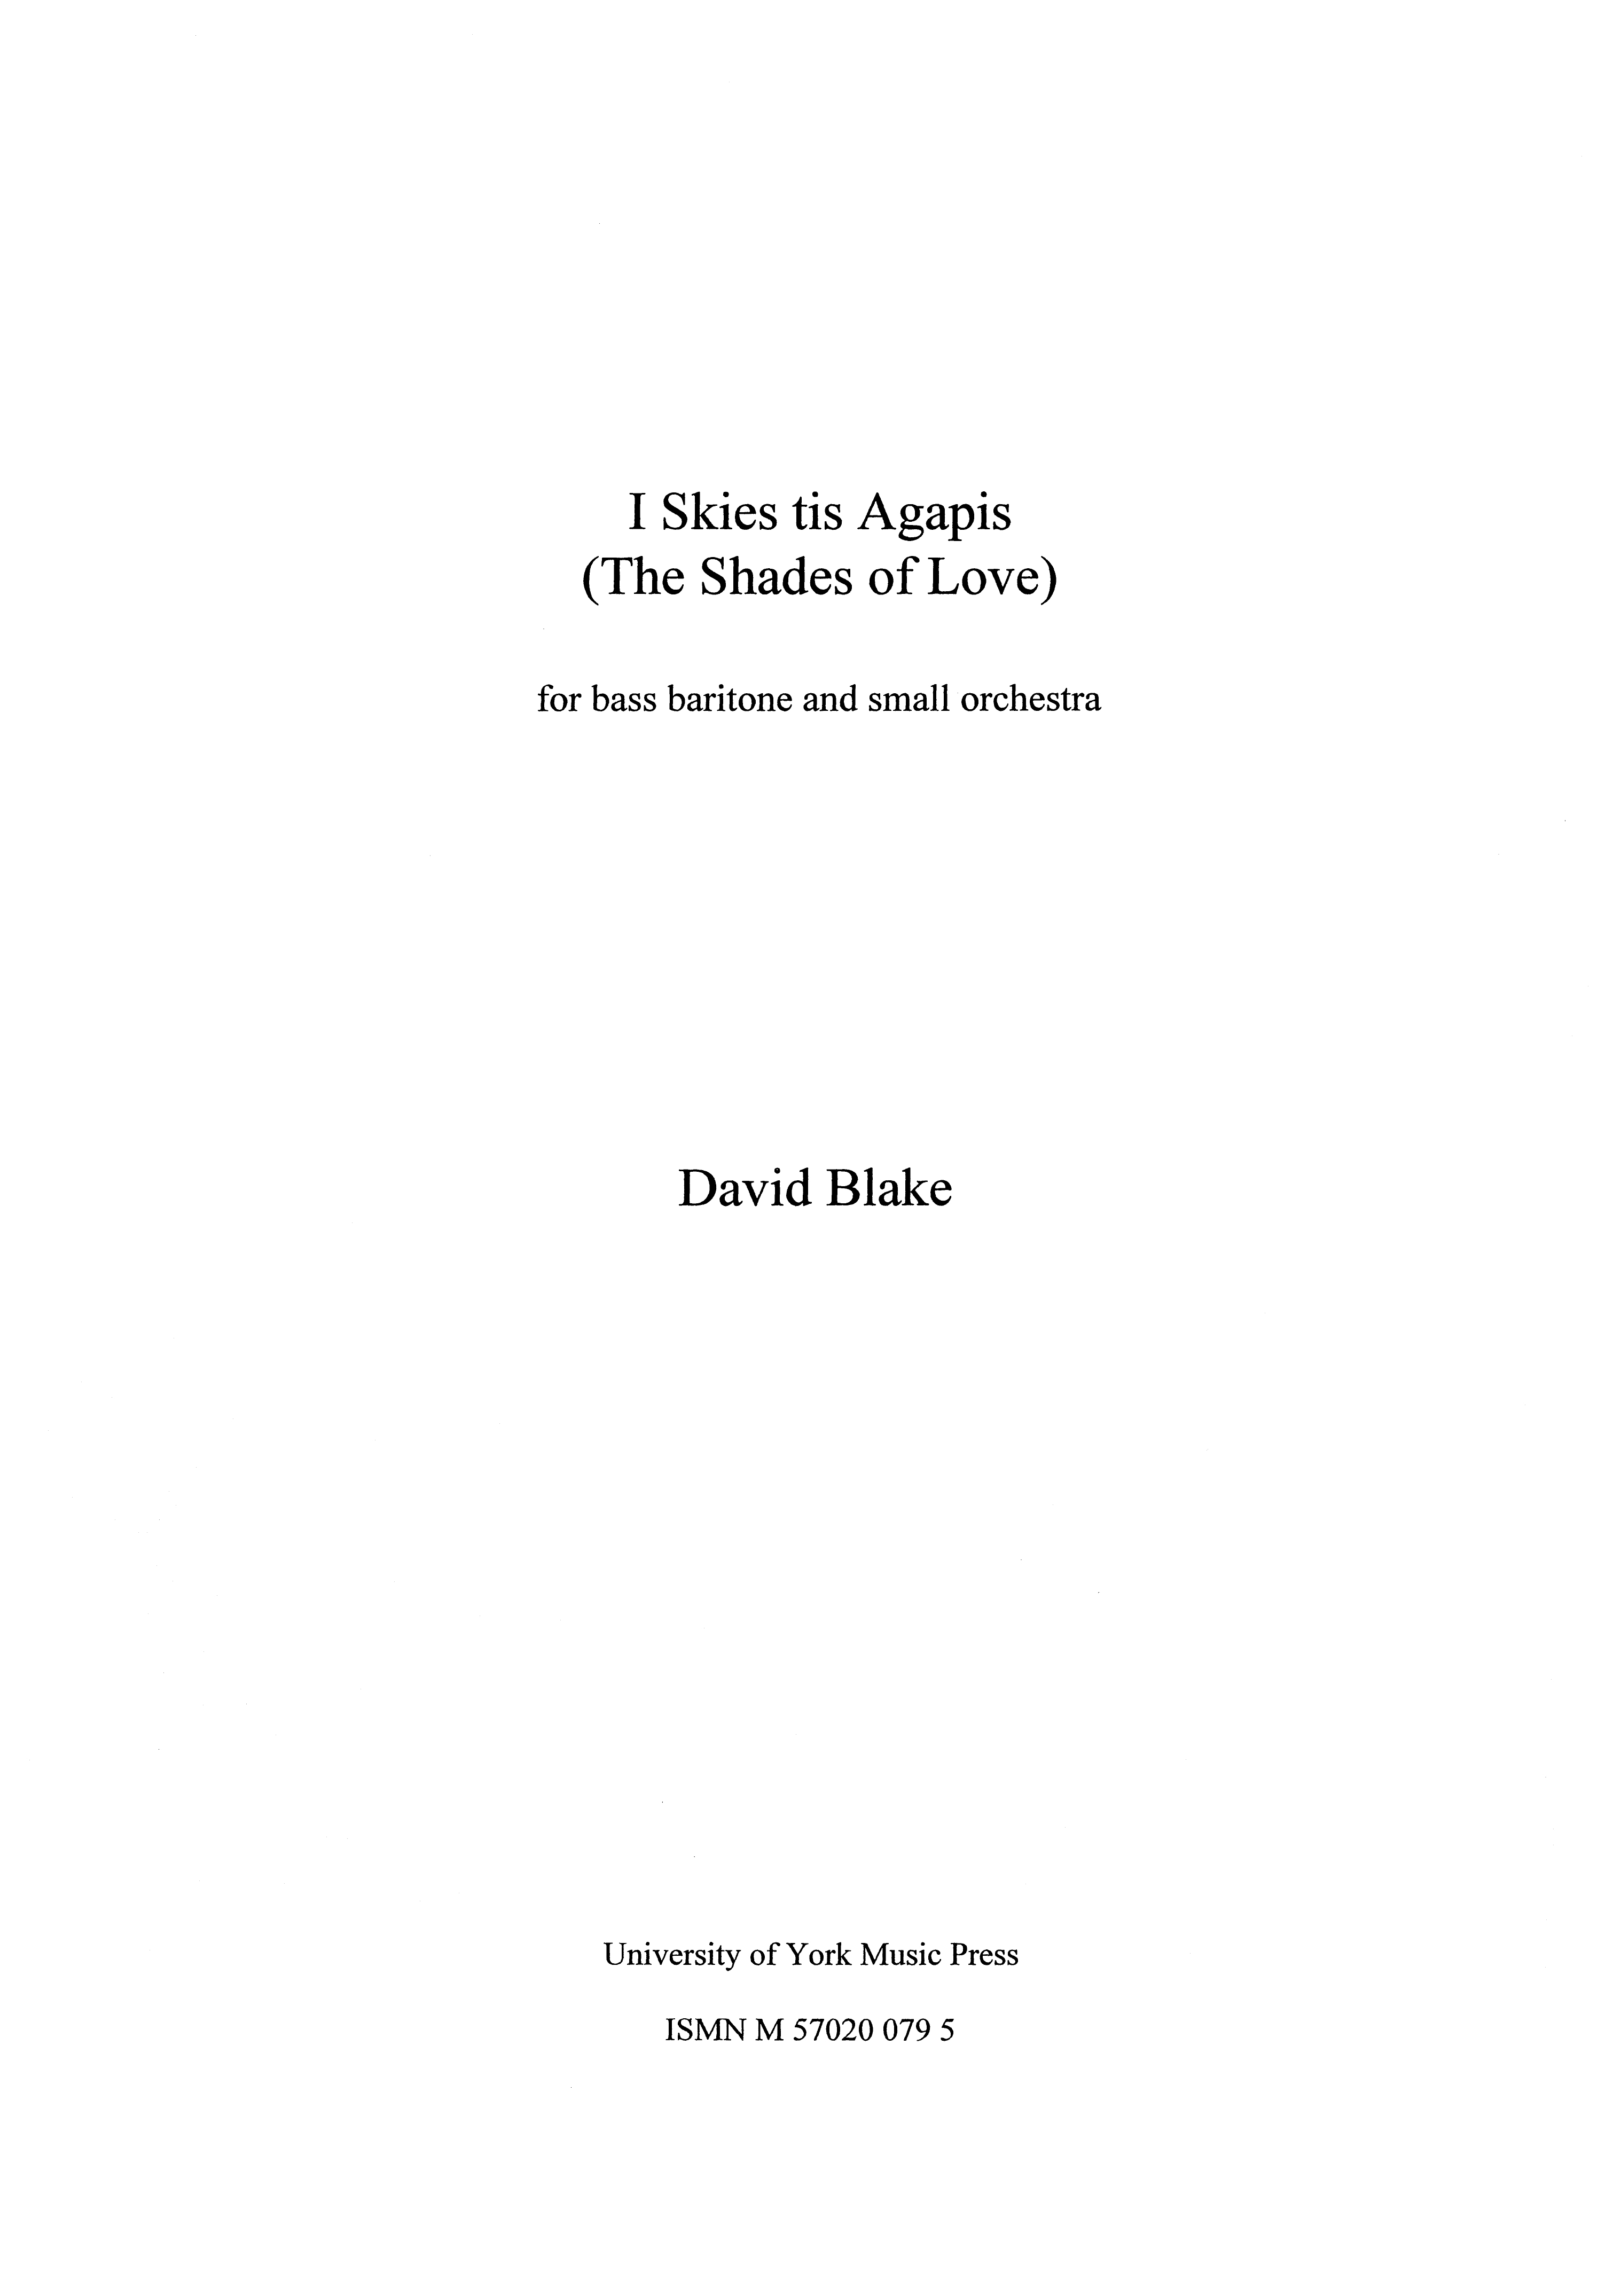 David Blake: I Skies Tis Agapis: Vocal: Score